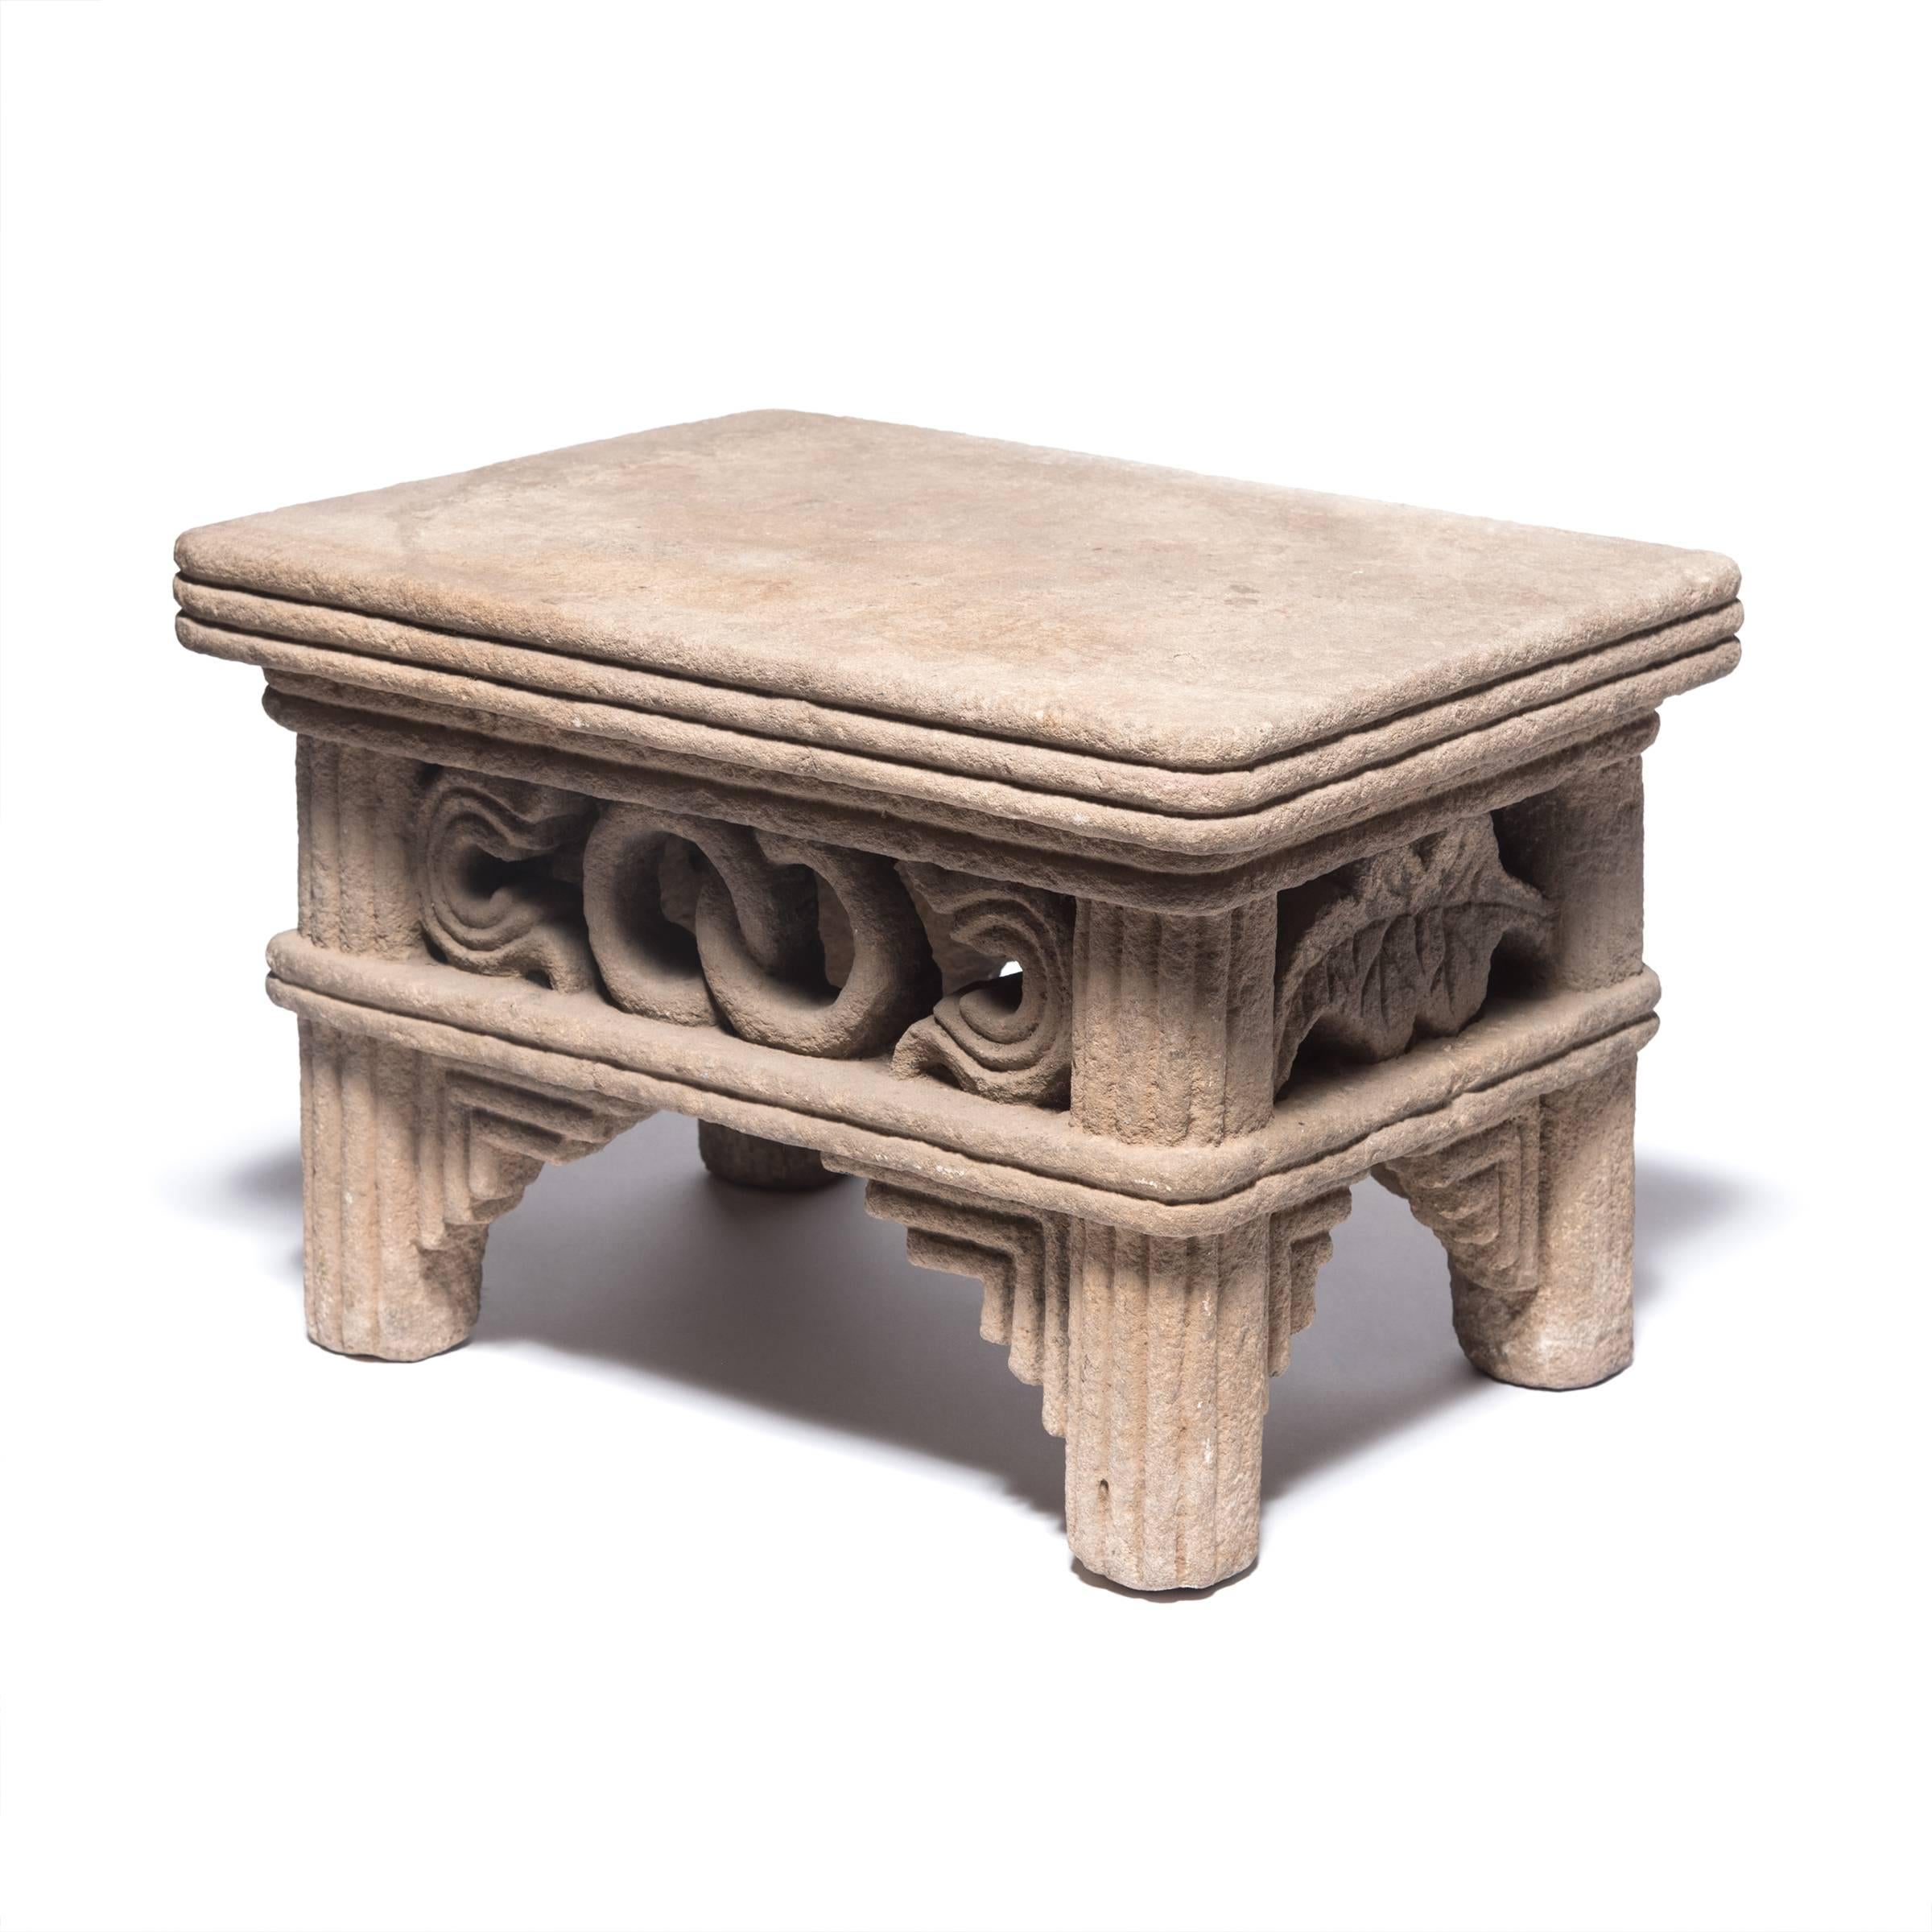 Dieser niedrige Tisch aus der späten Ming-/frühen Qing-Dynastie wurde vor über 400 Jahren von Hand aus einem einzigen Kalksteinblock gehauen. Der Tisch hat Schürzen mit ineinandergreifenden Ringen, Symbolen der Ewigkeit, und mit Perlen besetzte